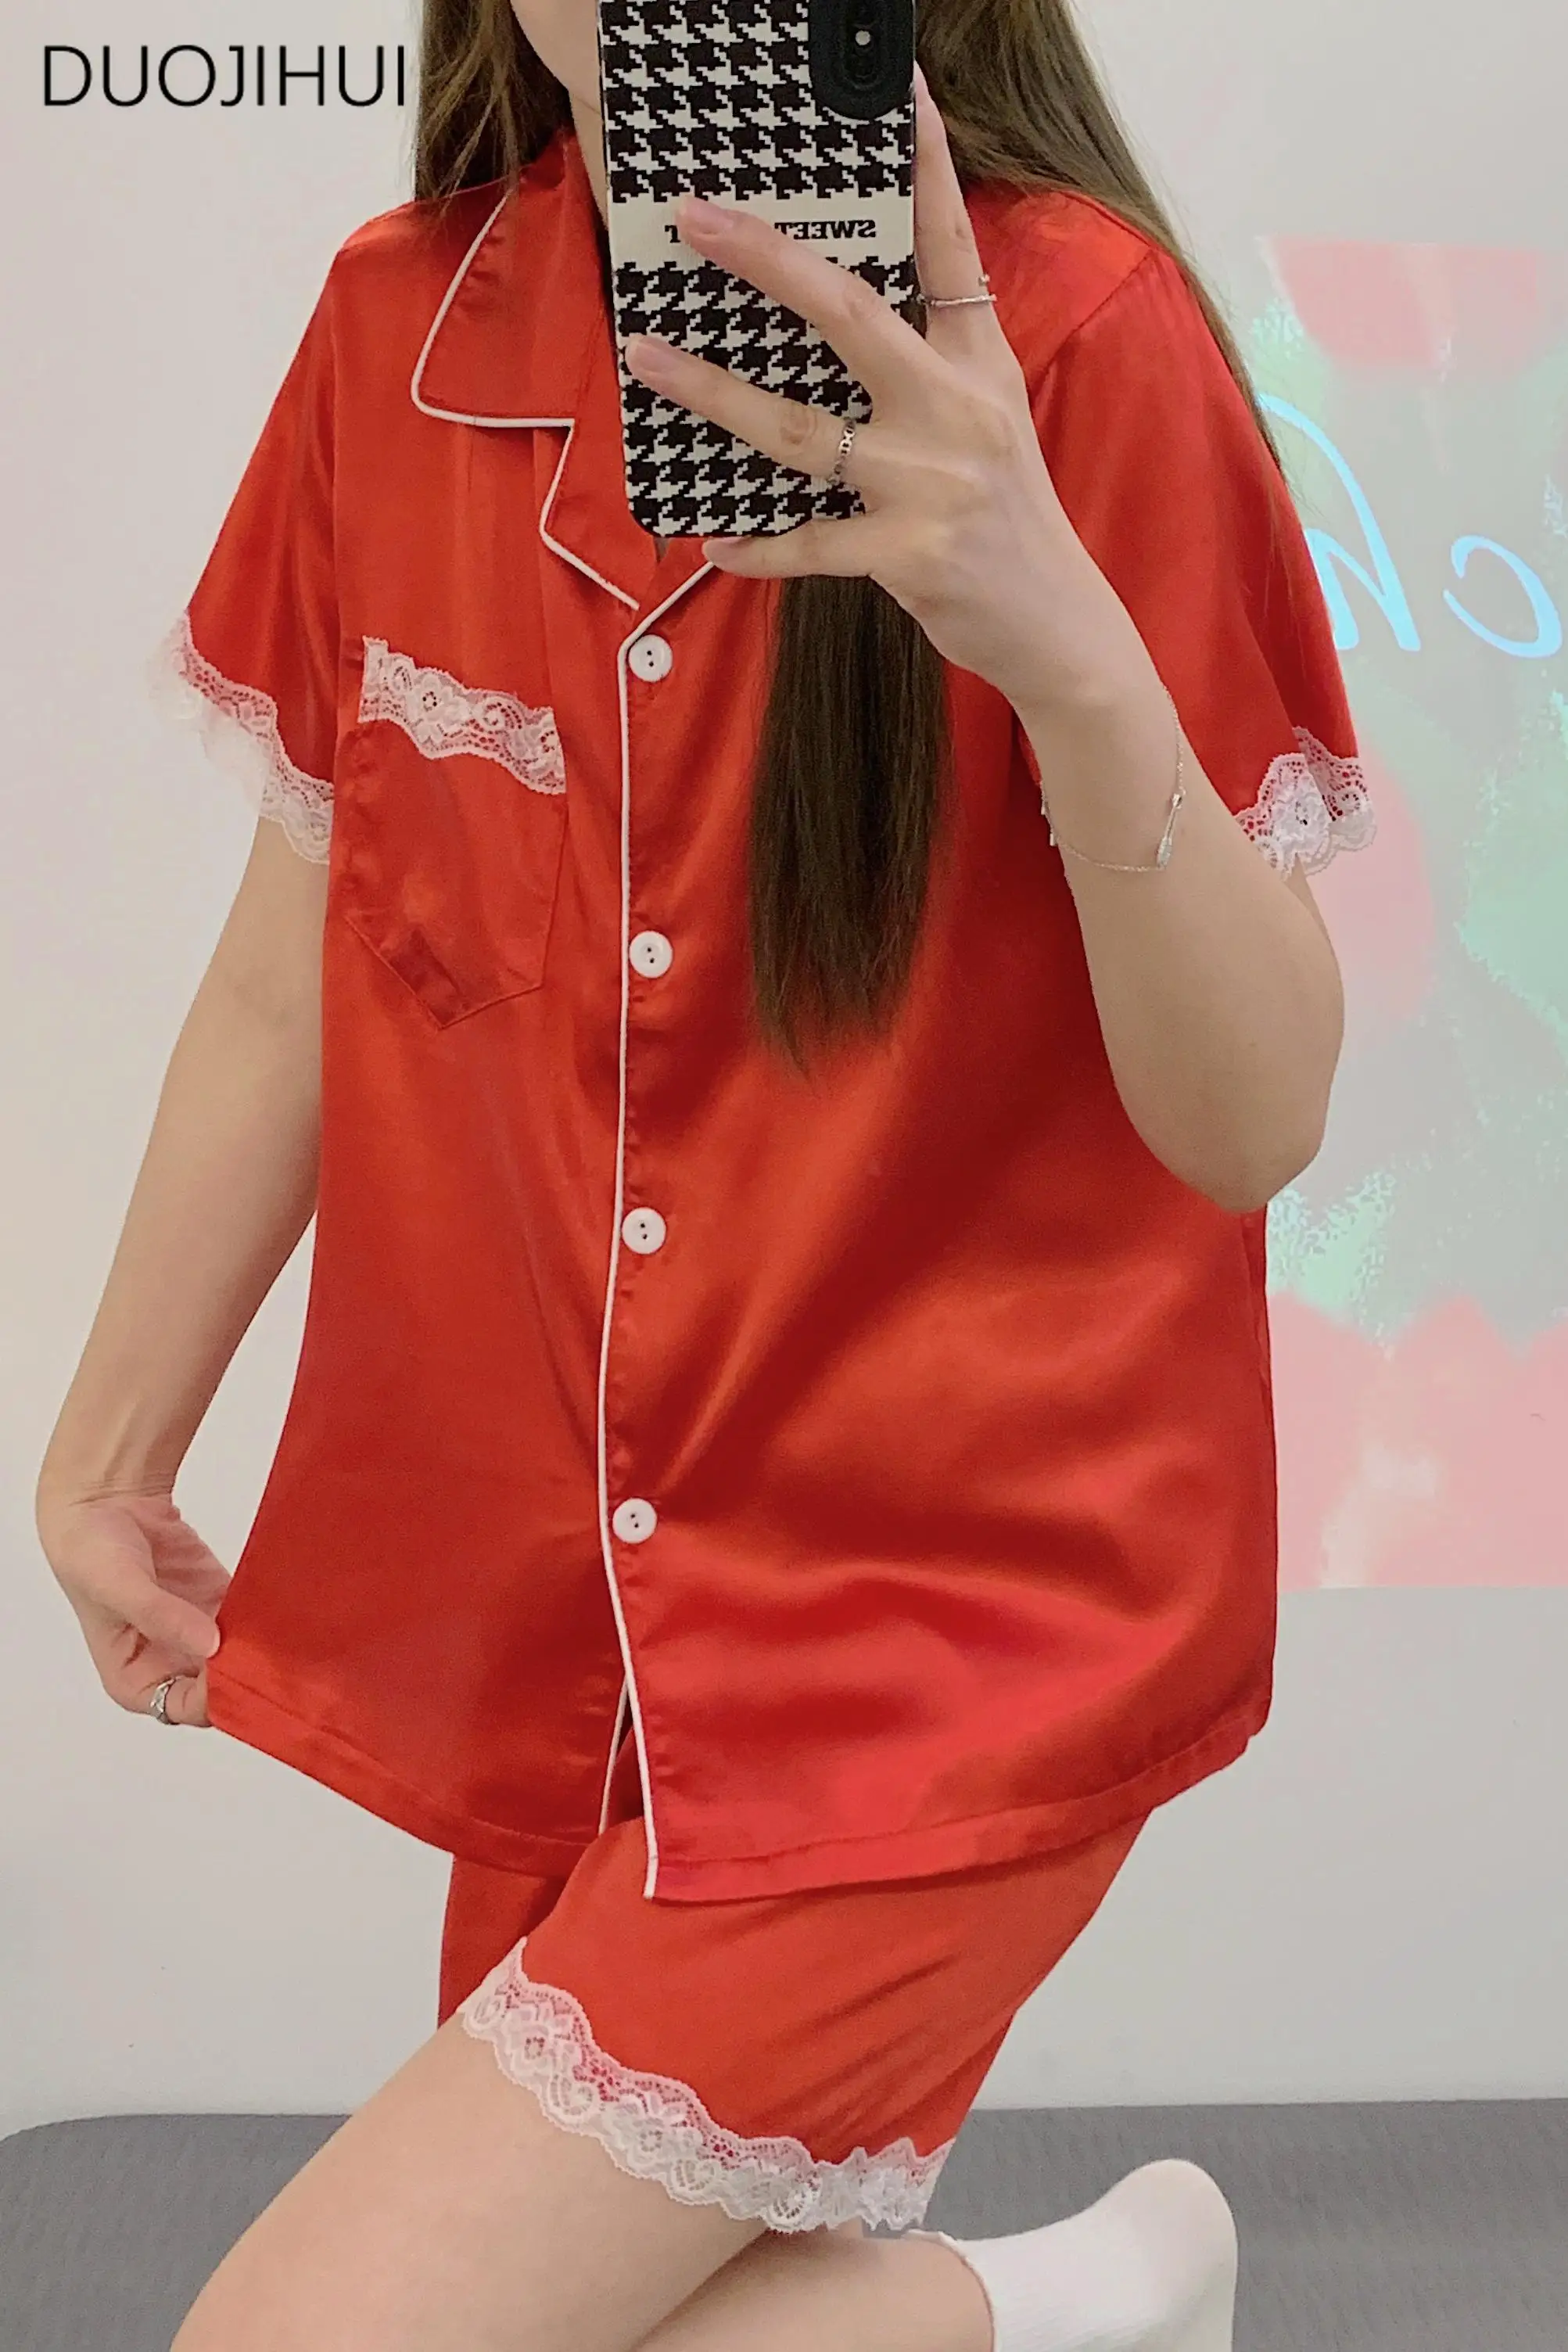 

DUOJIHUI новые красные милые кружевные женские пижамные комплекты из двух частей шикарный кардиган на пуговицах базовые брюки модные повседневные домашние пижамы для женщин